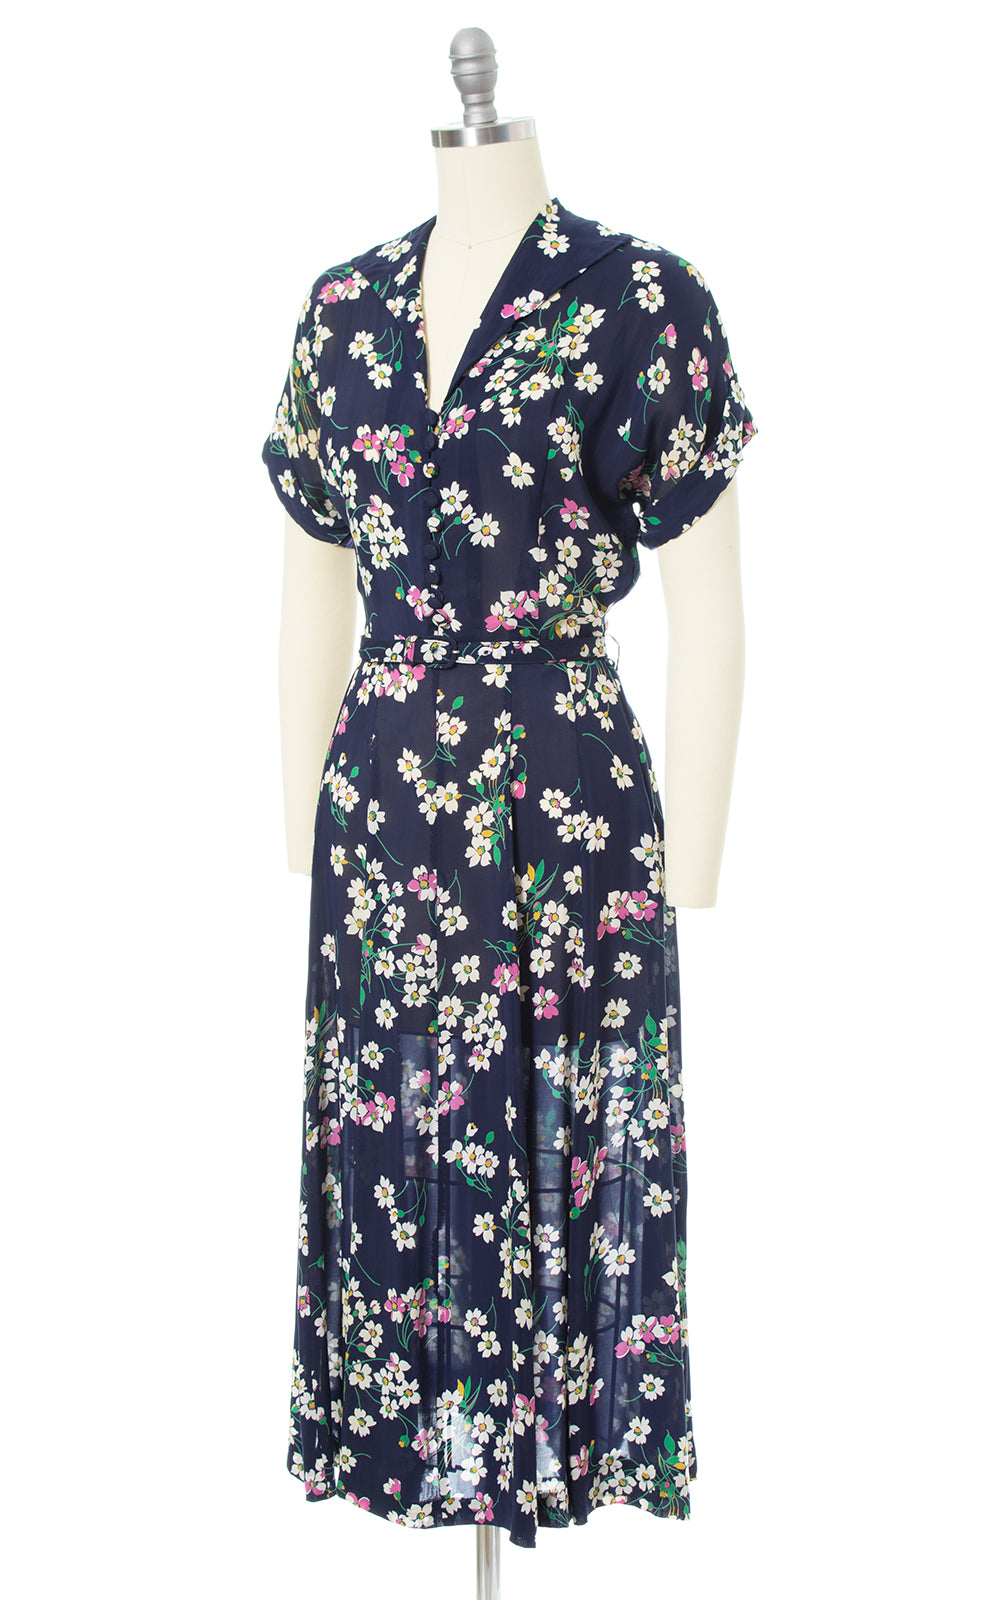 1940s Floral Navy Blue Rayon Shirtwaist Dress